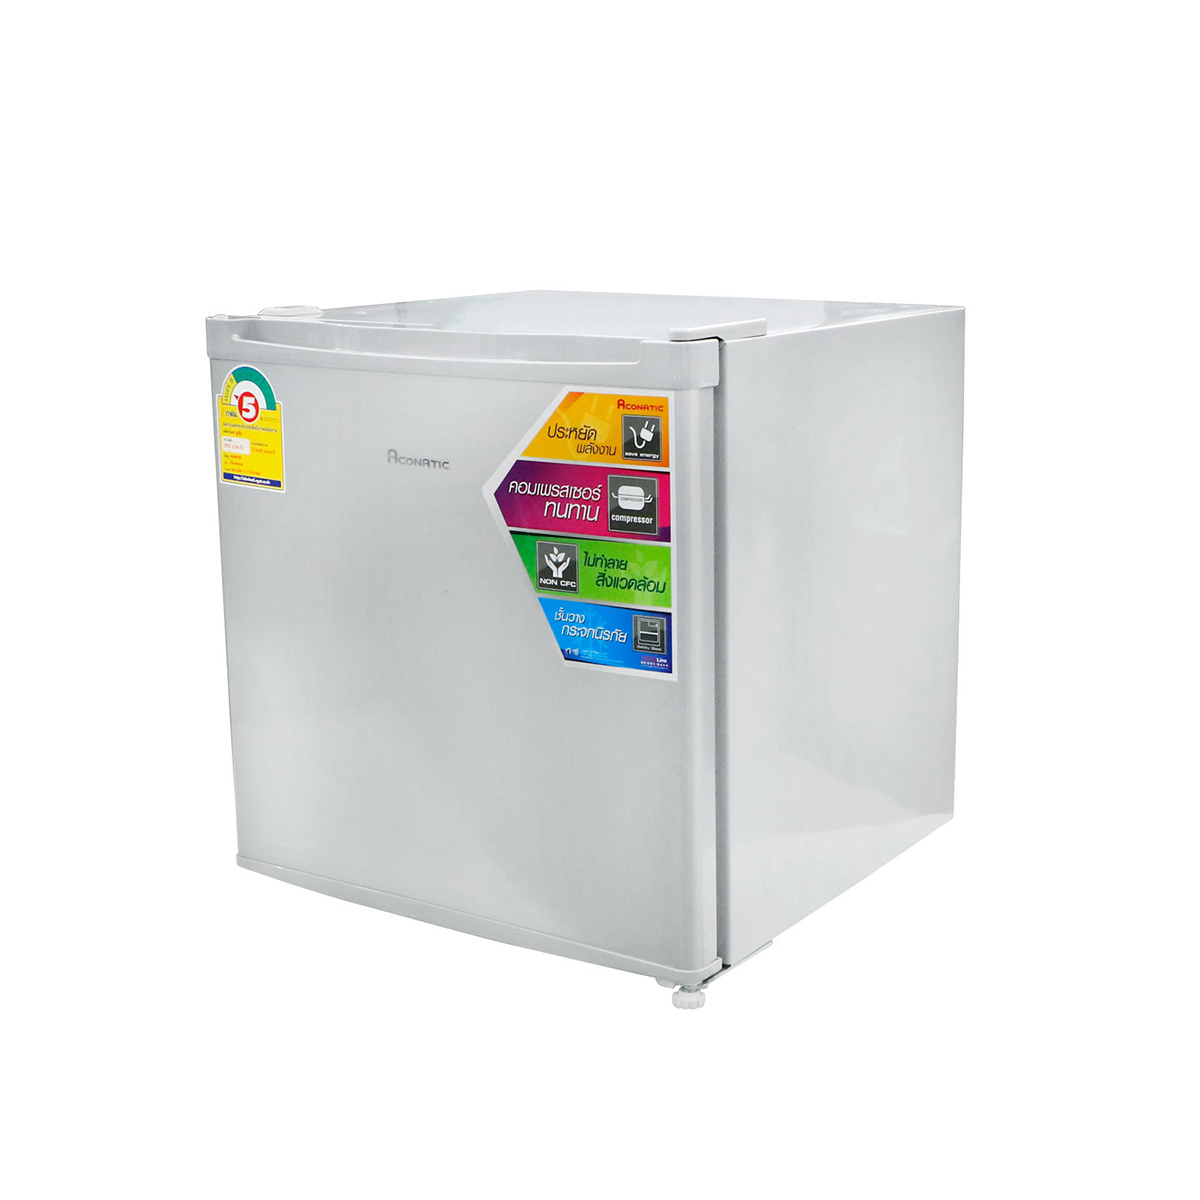 Aconatic ตู้เย็นมินิบาร์ ขนาด 1.7 คิว ความจุ 46 ลิตร รุ่น AN-FR468 (รับประกัน 1 ปี)